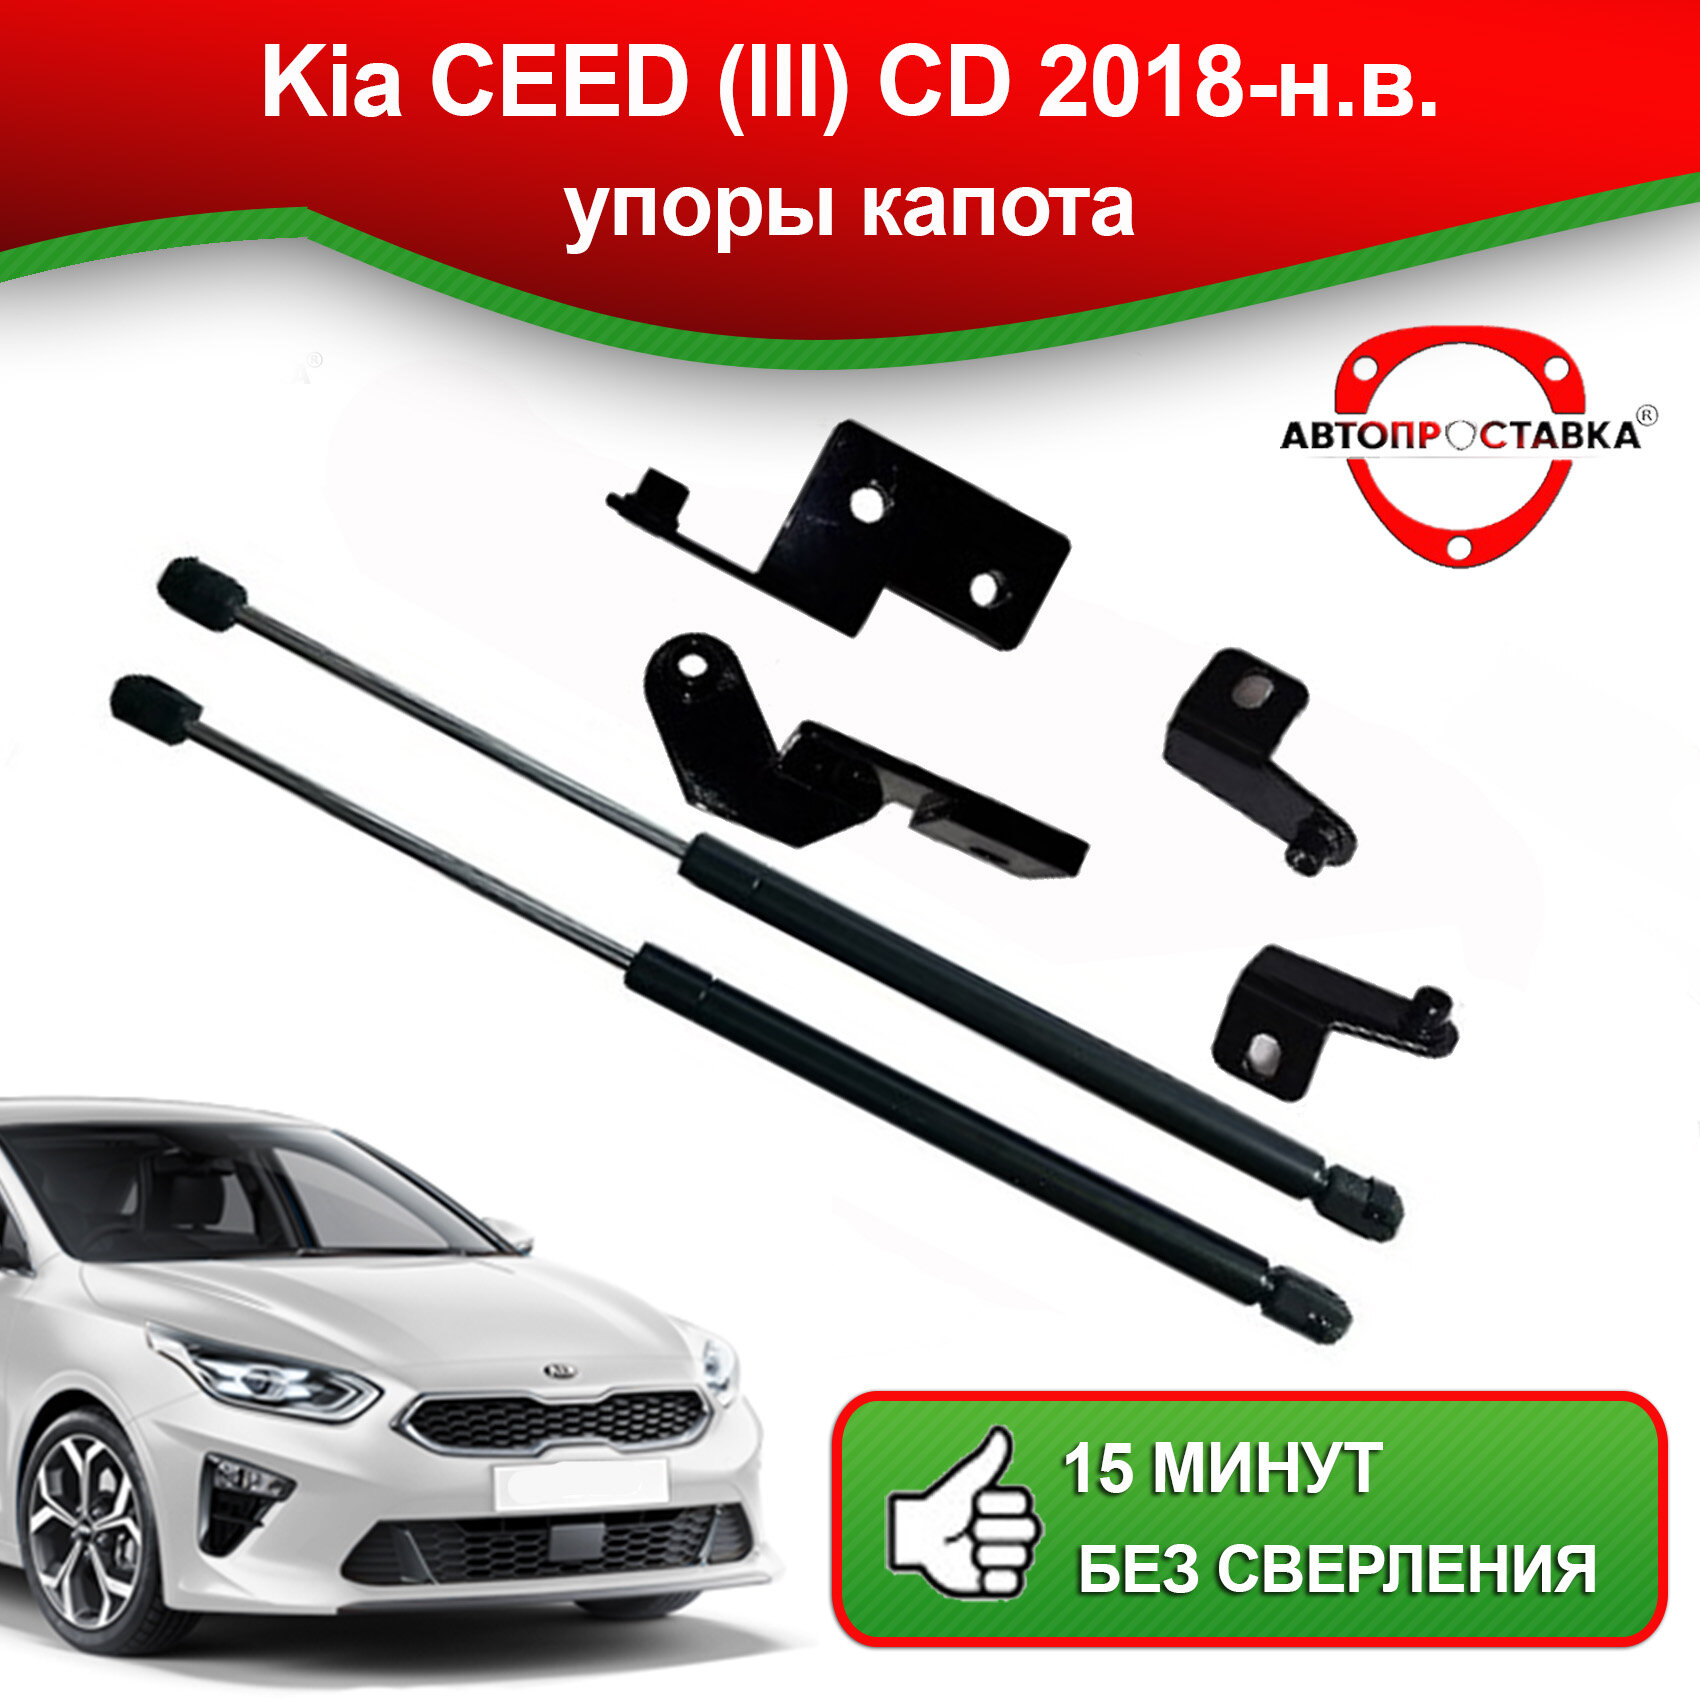 Упоры капота для Kia Ceed 3 CD 2018-наст. время / Газовые амортизаторы капота Киа Сид 3 CD